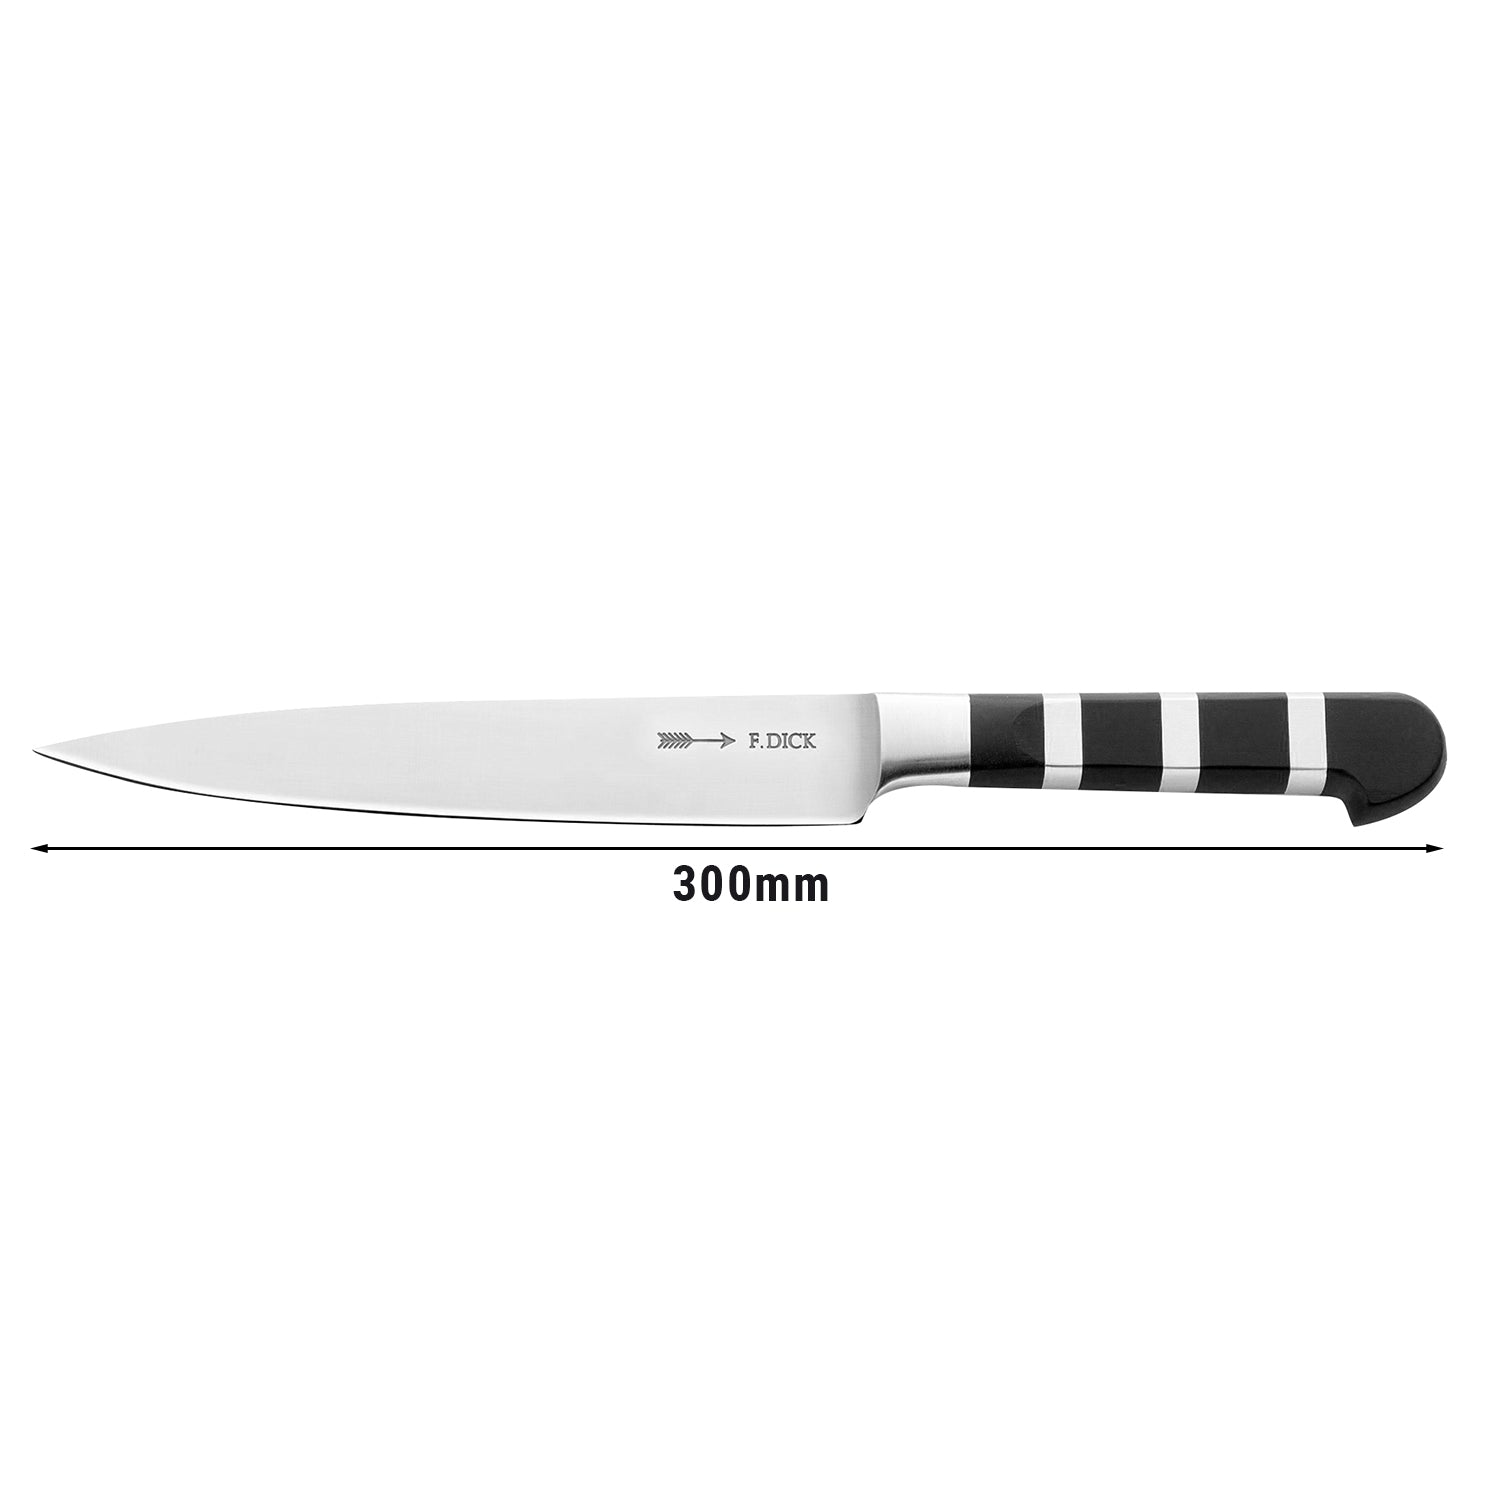 F. DICK fileteringskniv - 18 cm